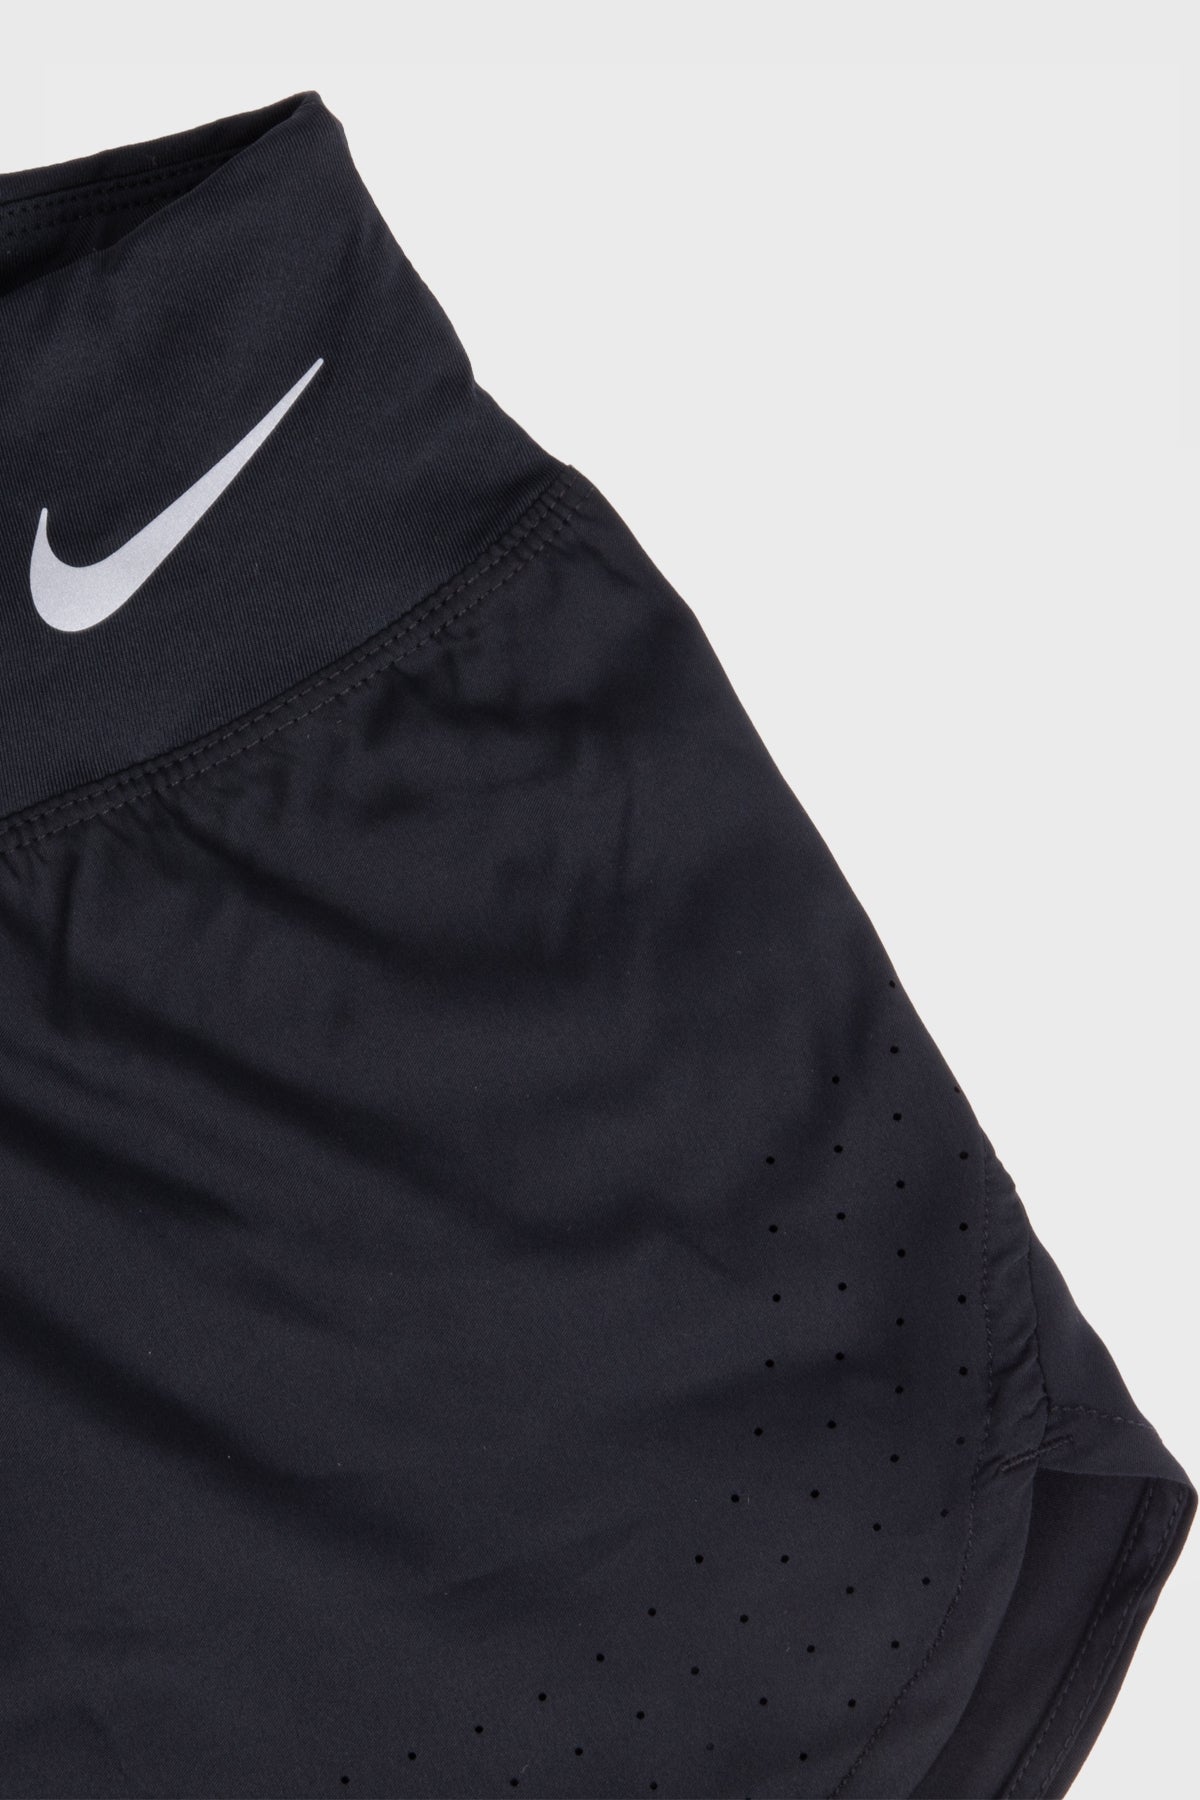 Nike W - Eclipse short 3in